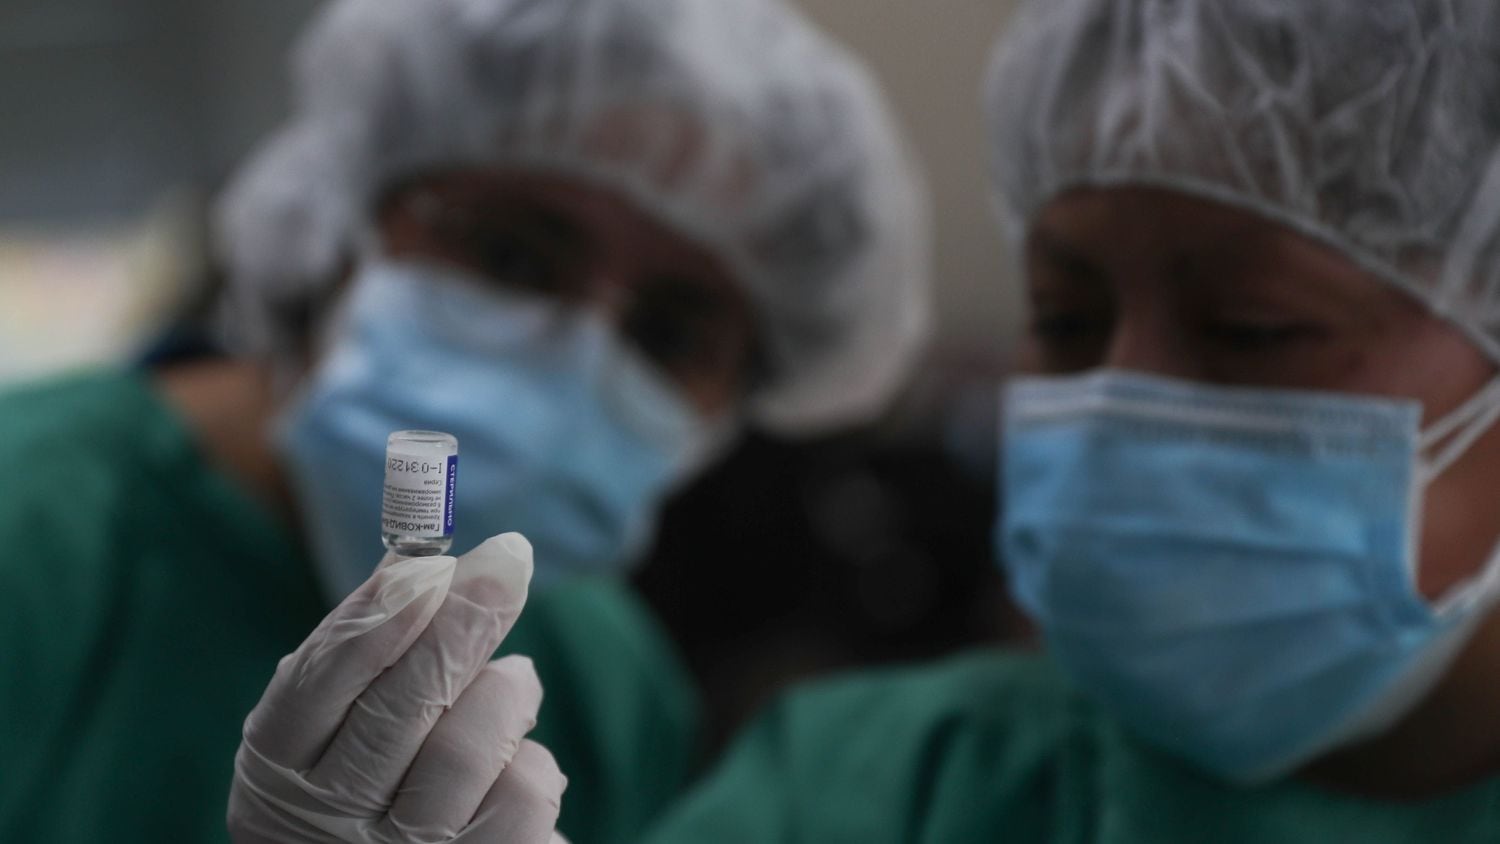 Trabajadores del Servicio Departamental de Salud (SEDES) de La Paz (Bolivia) preparan una dosis de la vacuna Sputnik V contra la covid-19, para inmunizar a personal de salud de la Caja Petrolera.